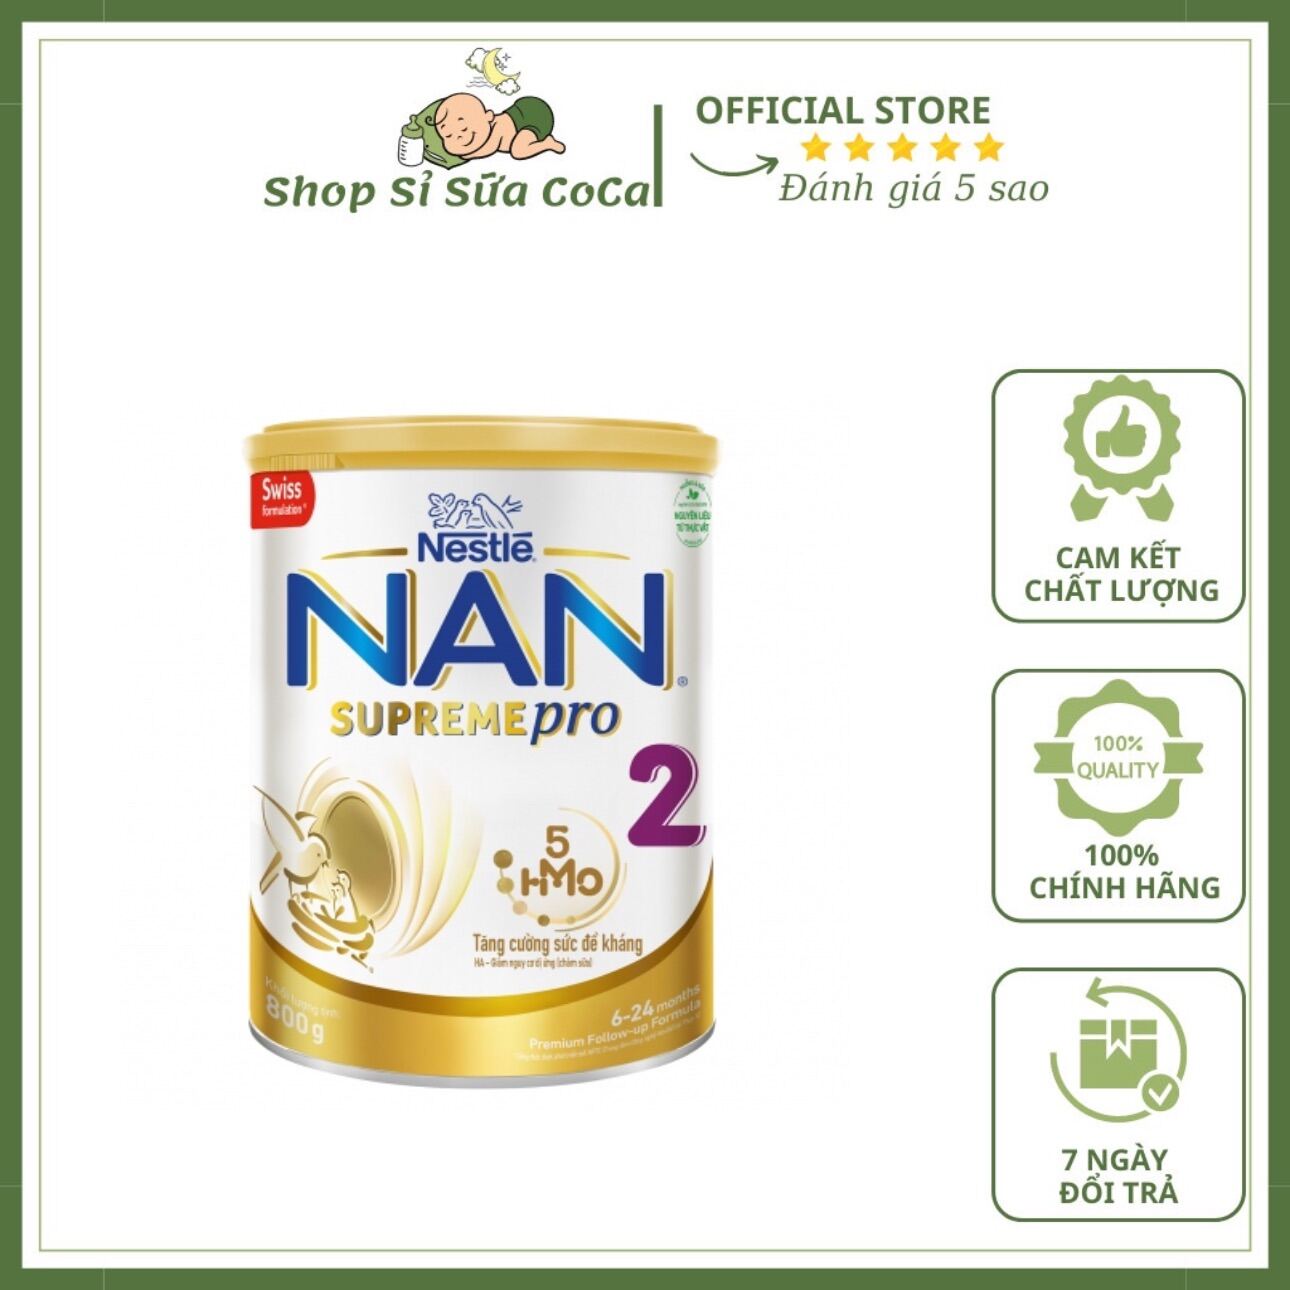 Sữa Nan Supreme Pro số 2 5-HMO 800g New 6 - 24 tháng